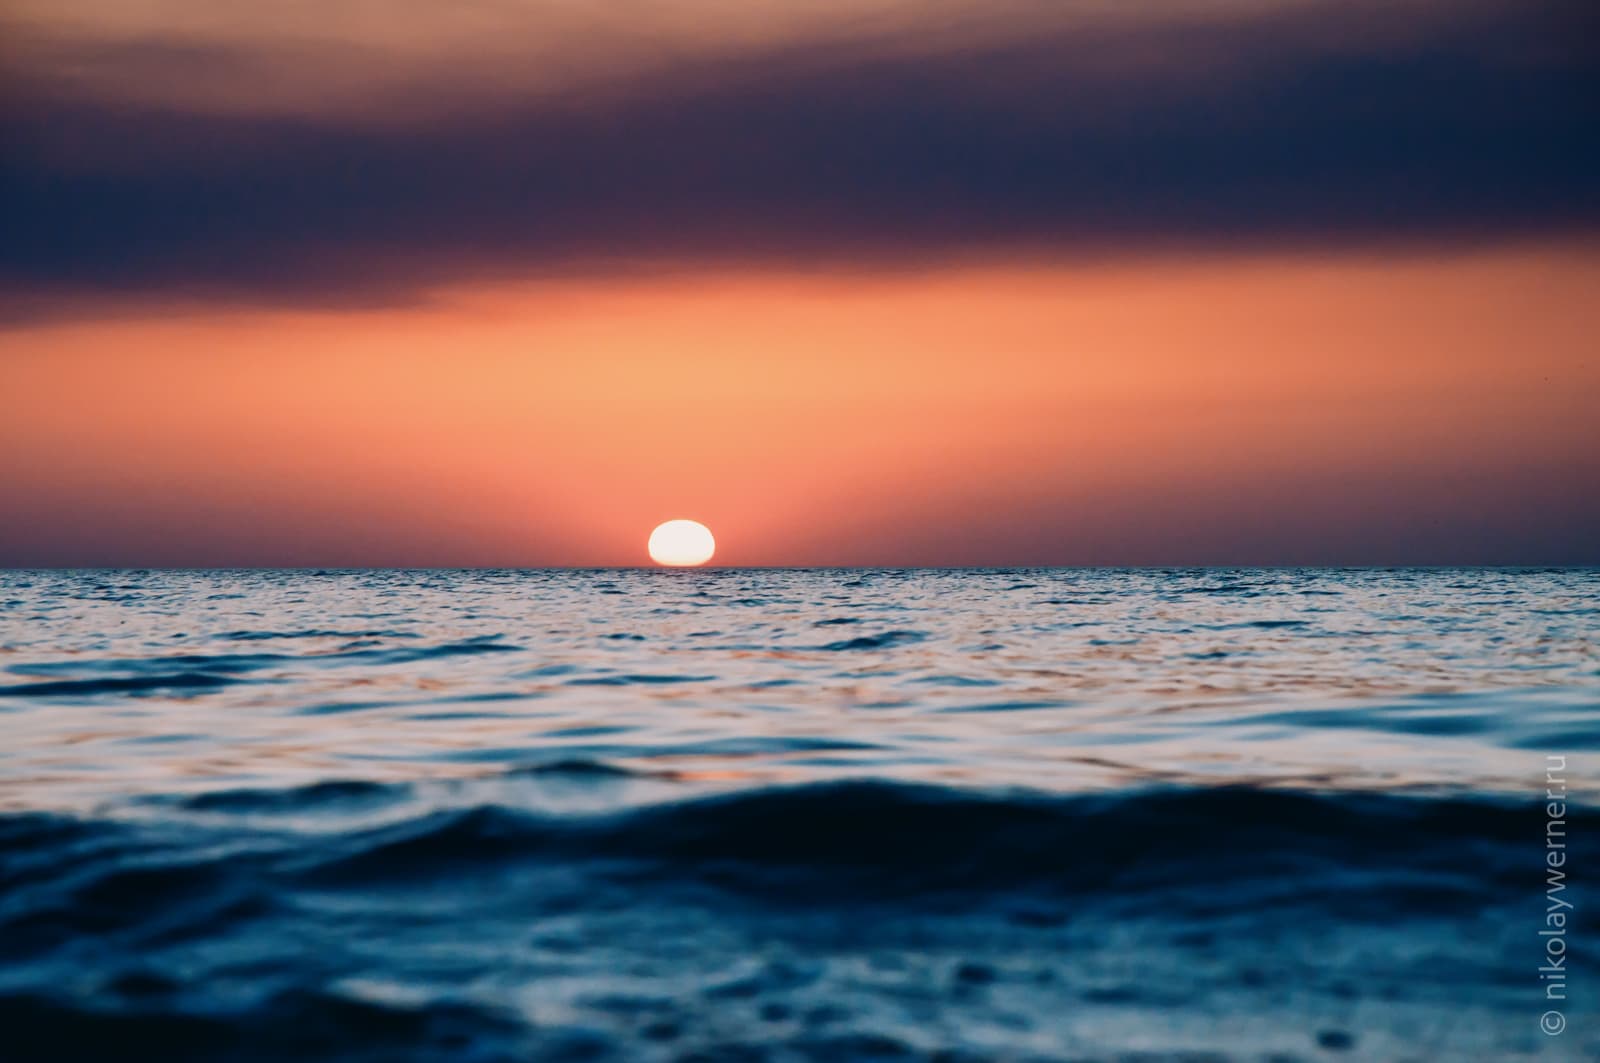 Закат. Солнце коснулось горизонта. Фотография от самой воды. На море лёгкая рябь, над горизонтом рыжее небо и тёмное дымчатое облако вверху.